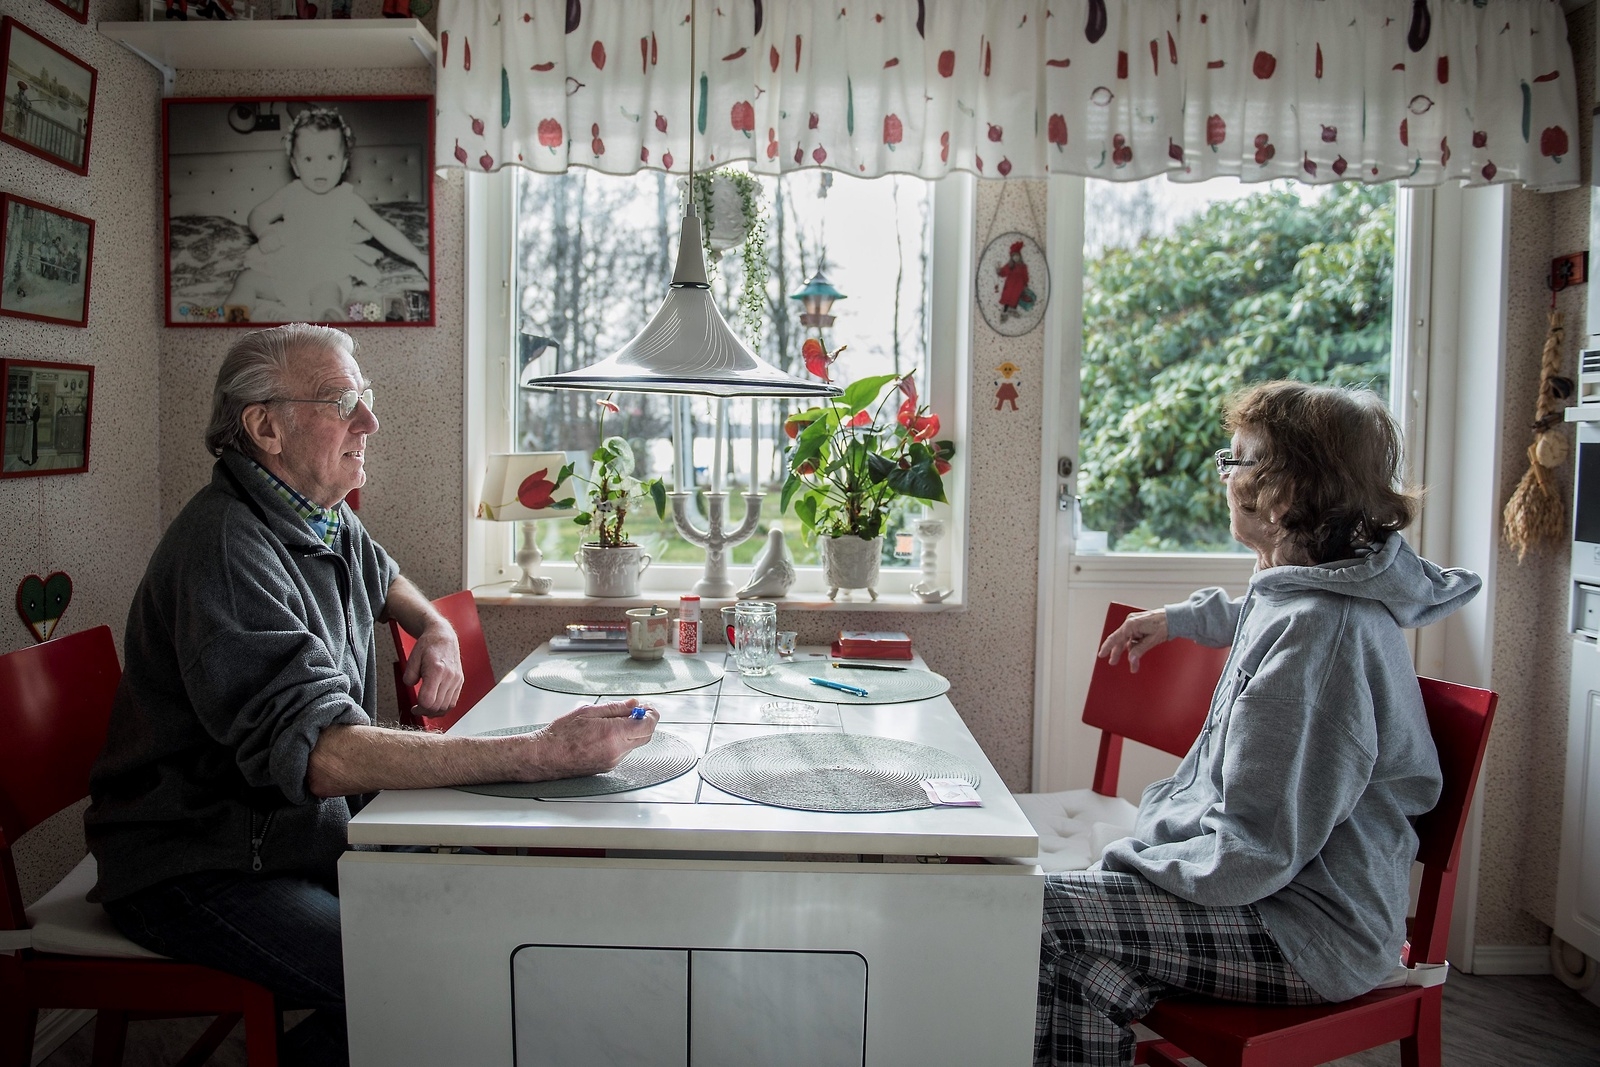 Arne och Gun Bengtsson blickar ut genom köksfönstret och minns tillbaka på tidigare år av översvämning. – Värst var det för 20 år sedan, säger Gun Bengtsson.Foto: Sofia Åström